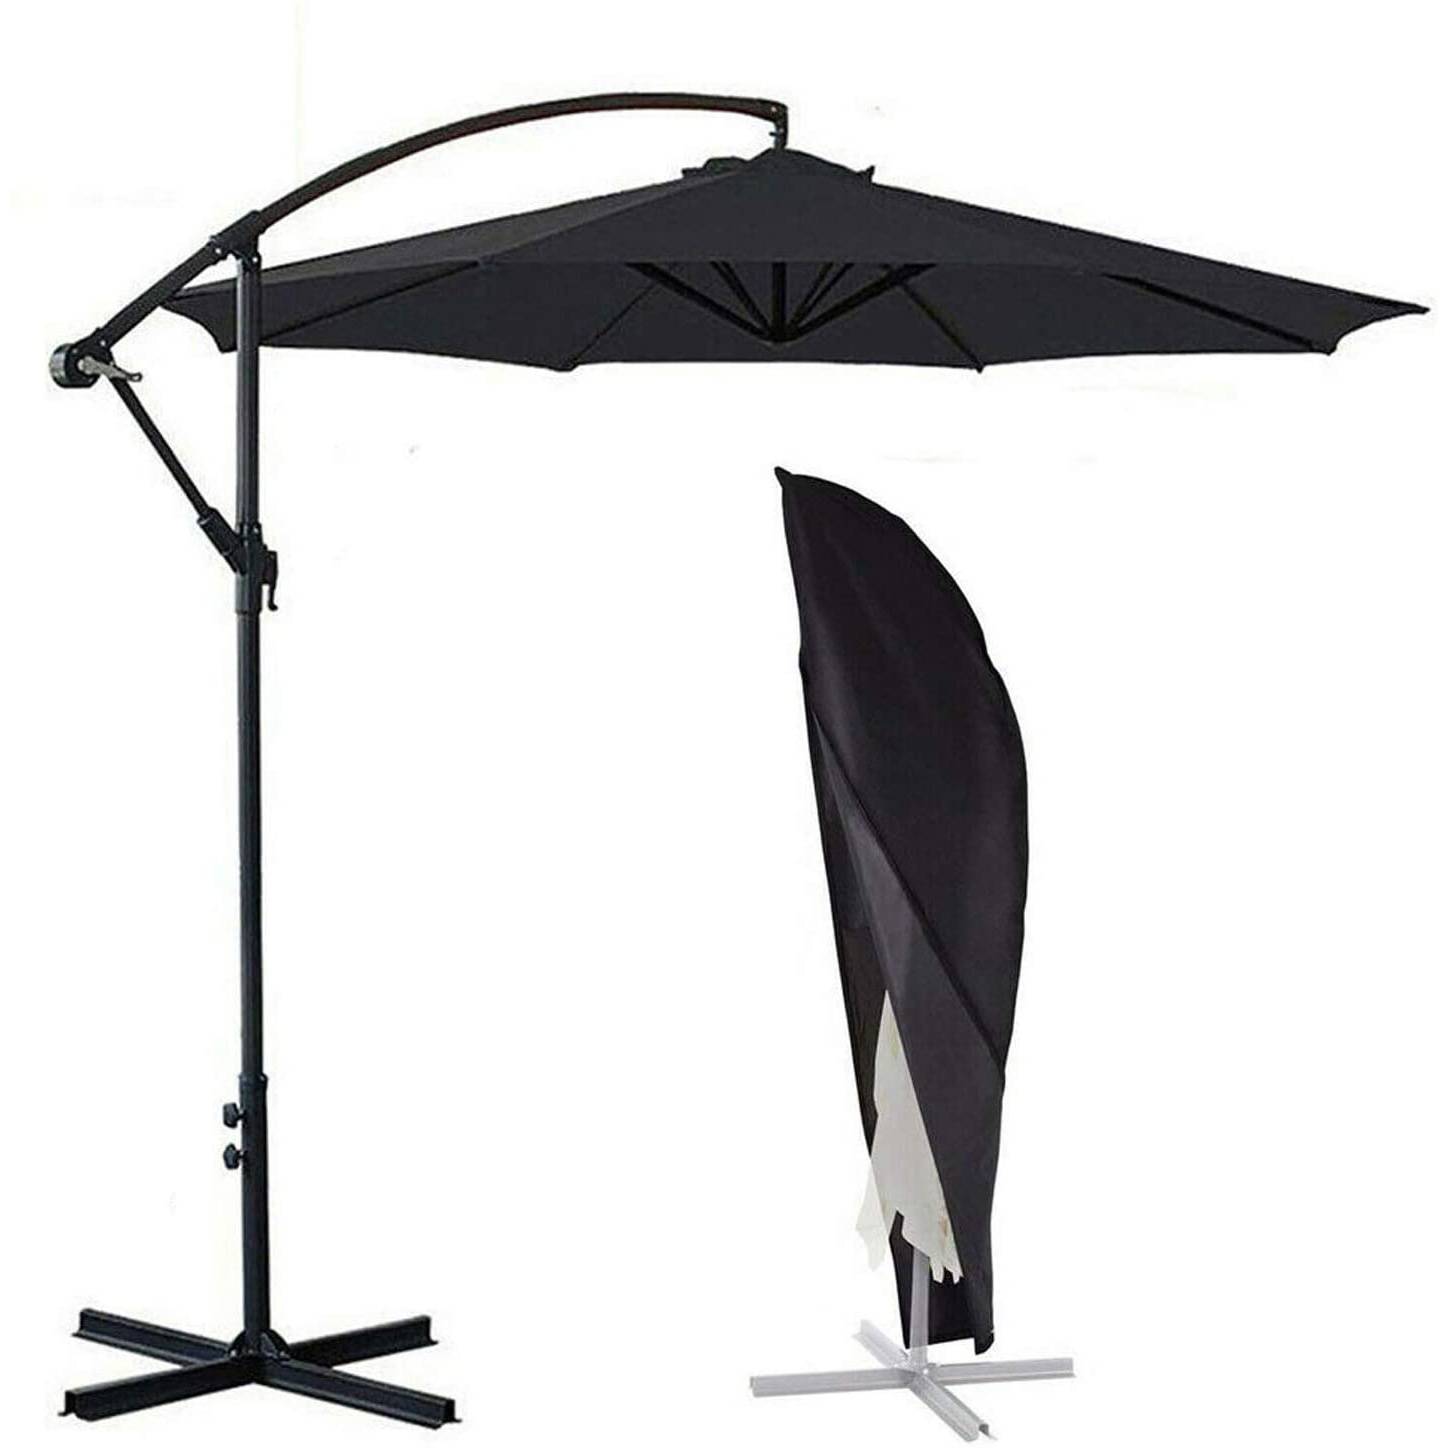 အရည်အသွေးမြင့် 3m*6ribs ကြီးမားသော ပြင်ပထီး ဥယျာဉ် parasol ဟင်းလင်းပြင် ထီး